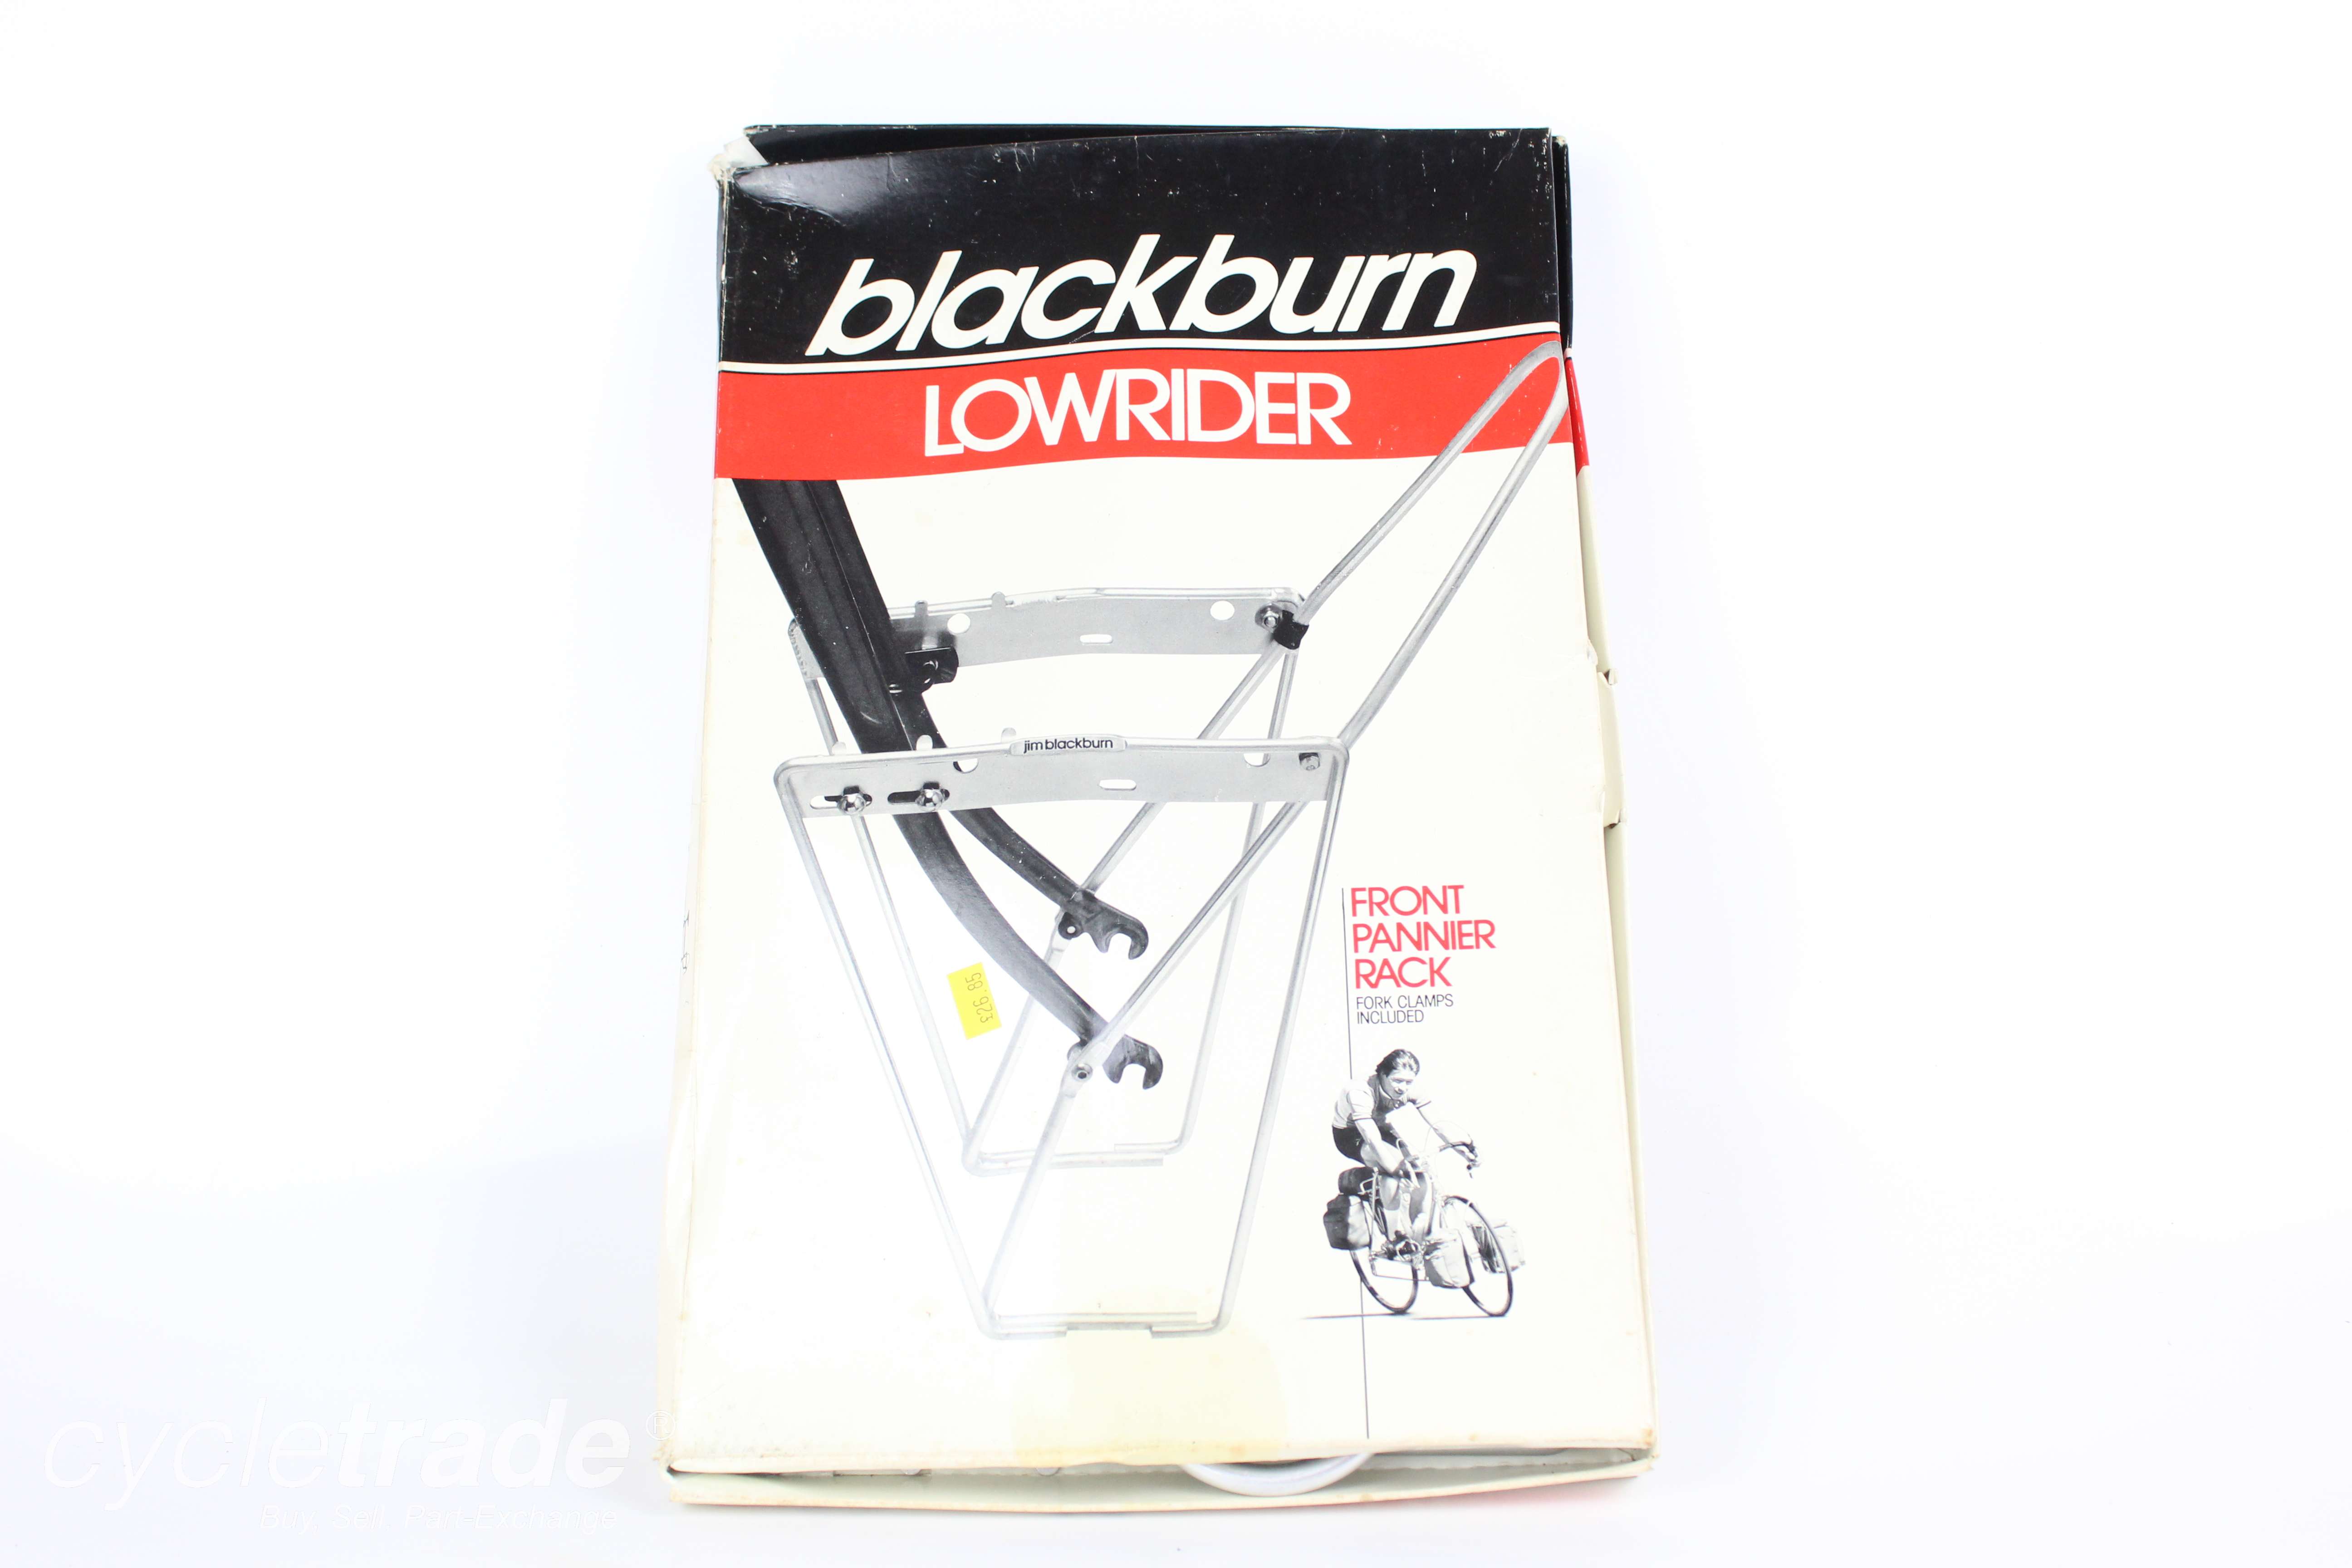 NEW NOS Vintage Road Bike Front Pannier Rack (1983) - Blackburn Lowrider - Grade A+